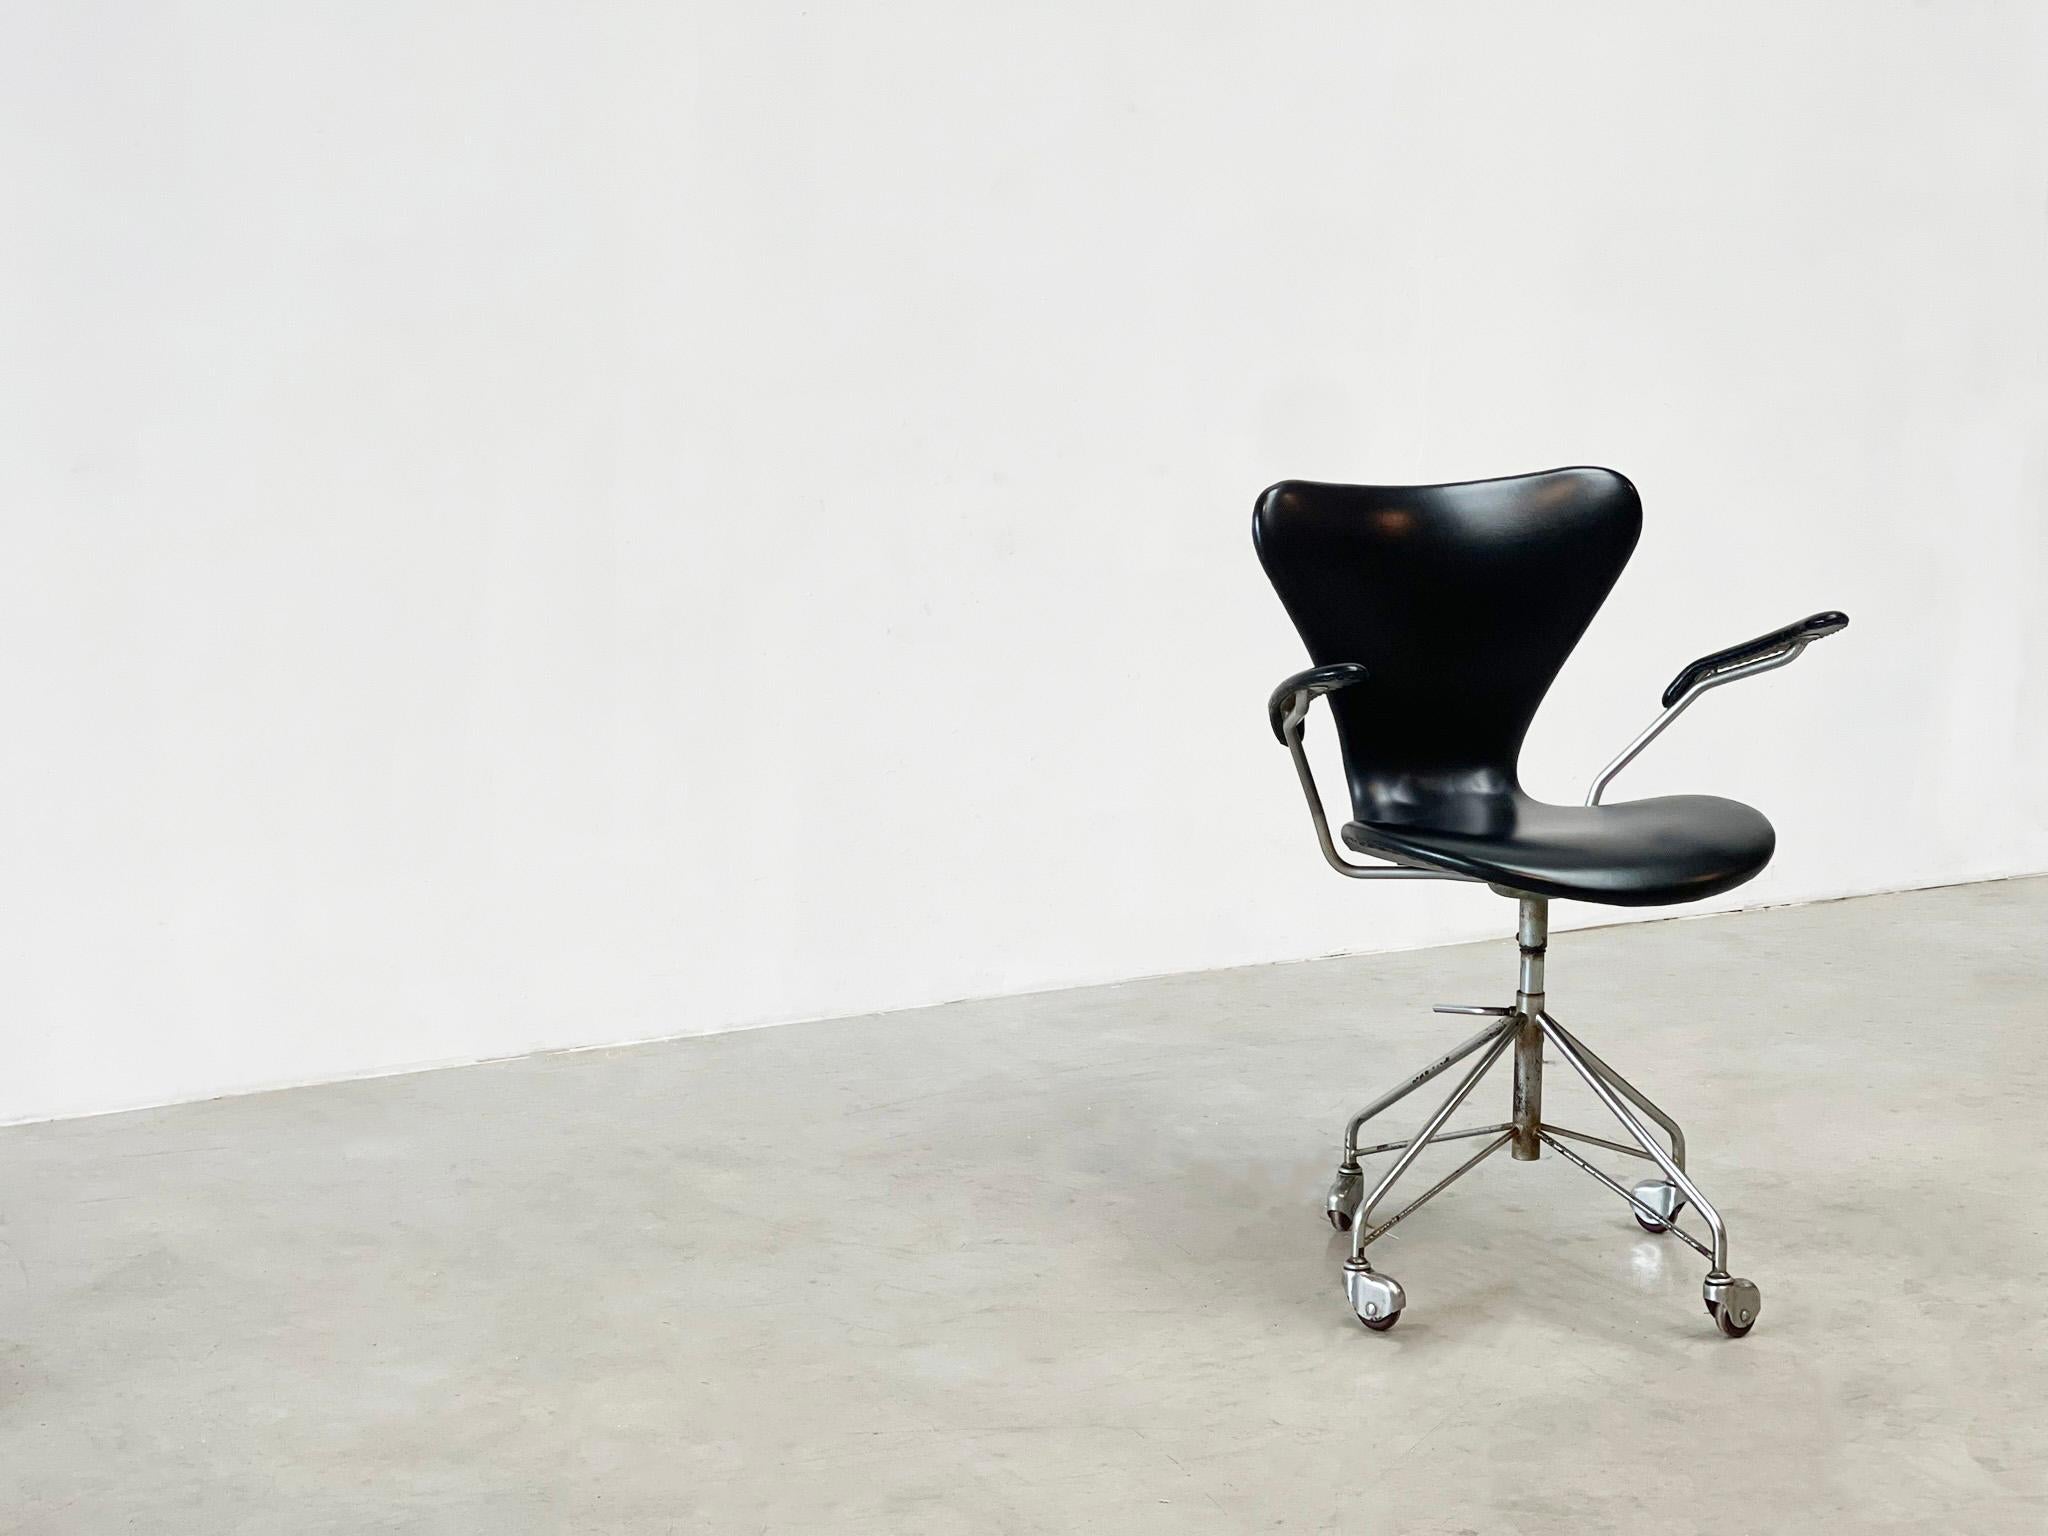 Chaise de bureau 3217 de l'un des plus célèbres et des meilleurs designers danois, Arne Jacobsen. Arne Jacobsen a conçu cette chaise de bureau dans les années 50 pour Fritz Hansen.

 

Cette chaise particulière date des années 60, il s'agit donc